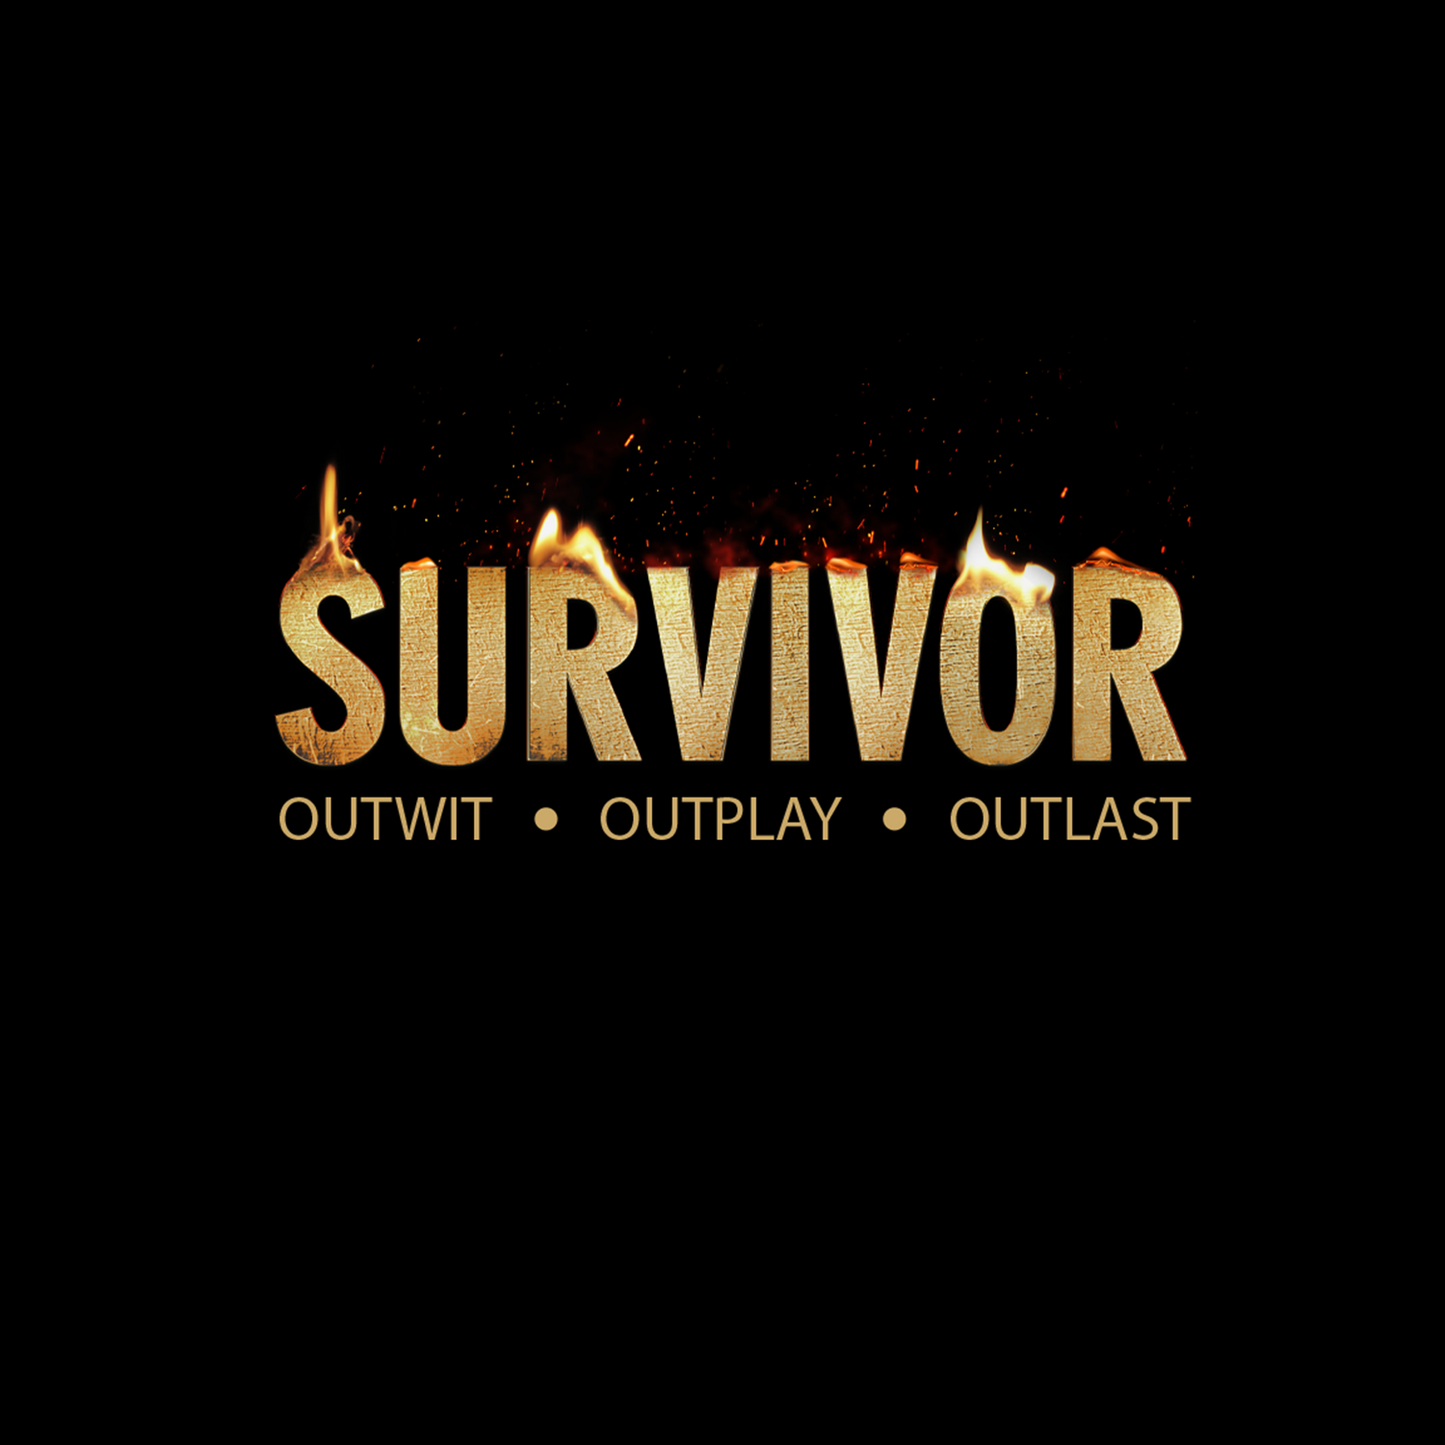 Survivor Flame Logo Black Mug